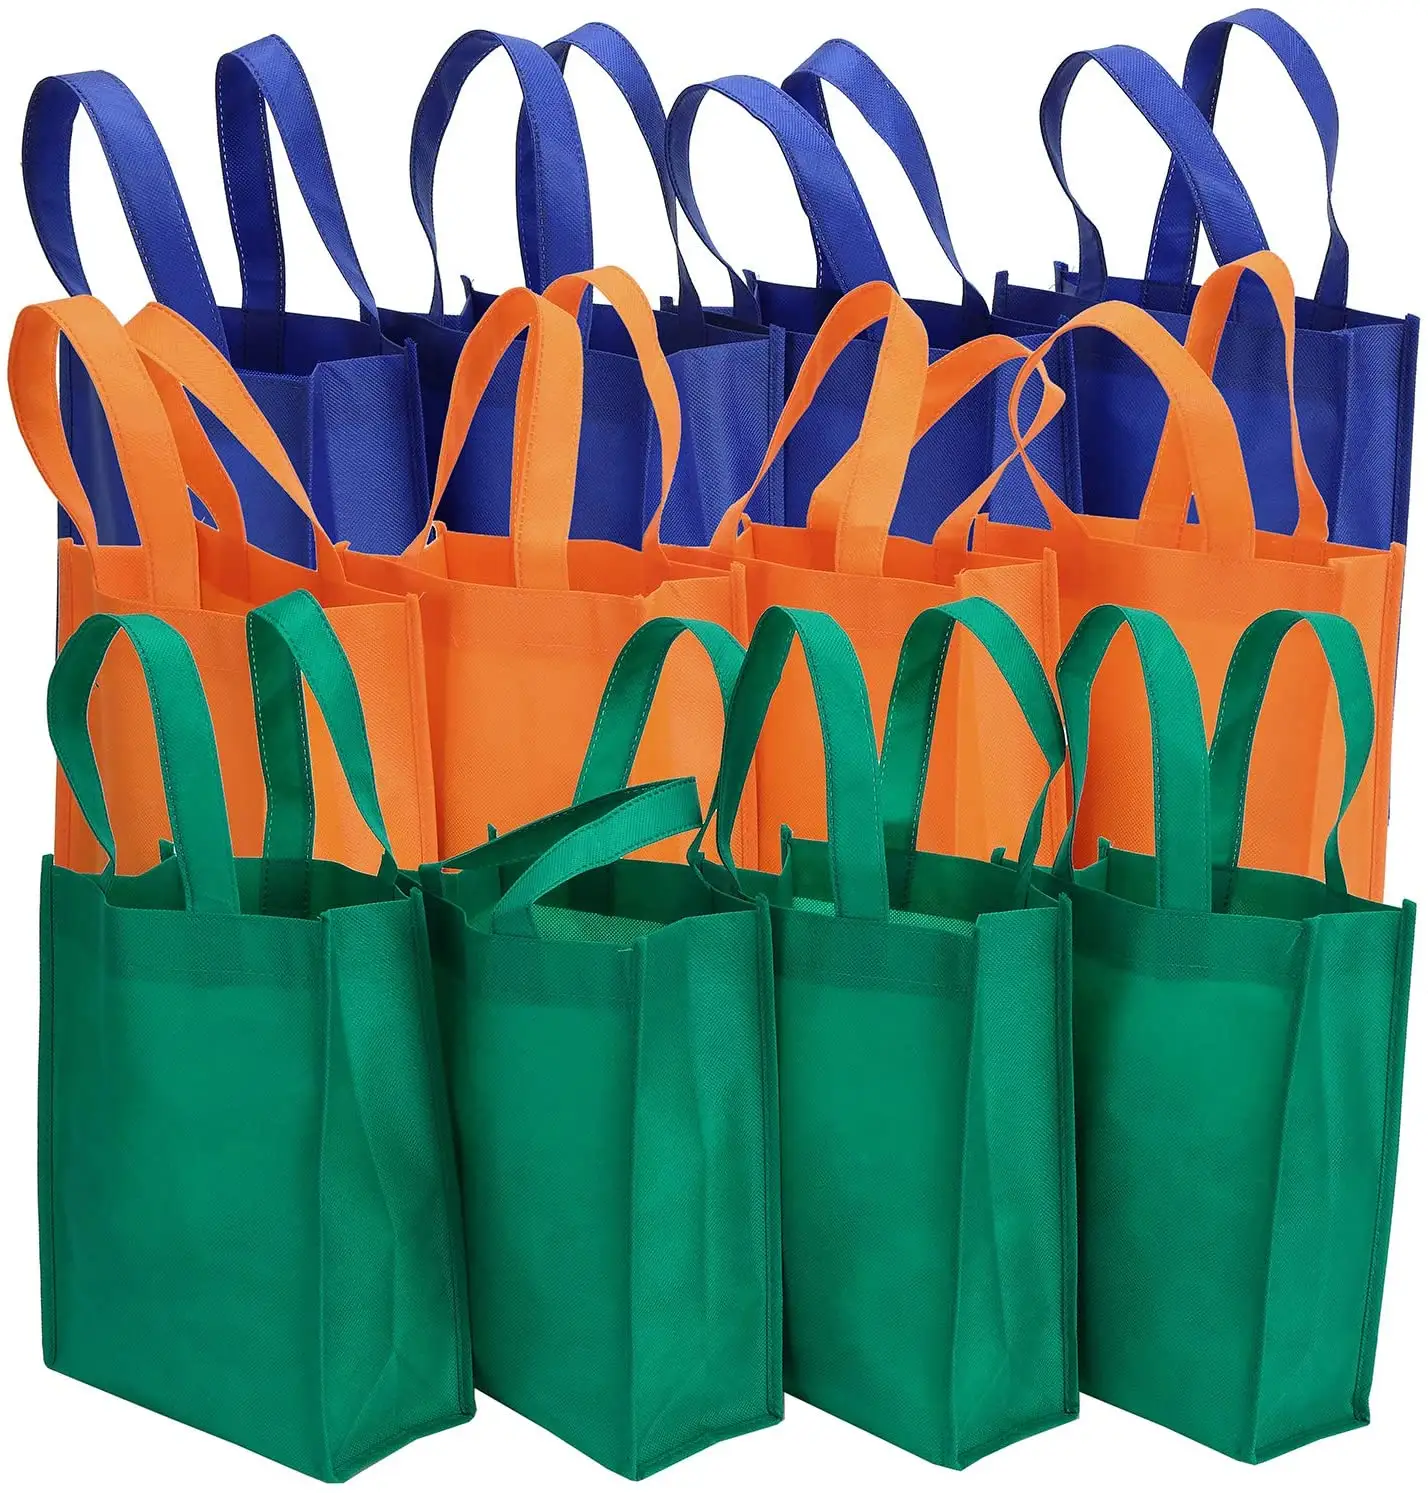 販促用低価格エコフレンドリー生分解性再利用可能なトートショッピングバッグ不織布カスタムバッグ